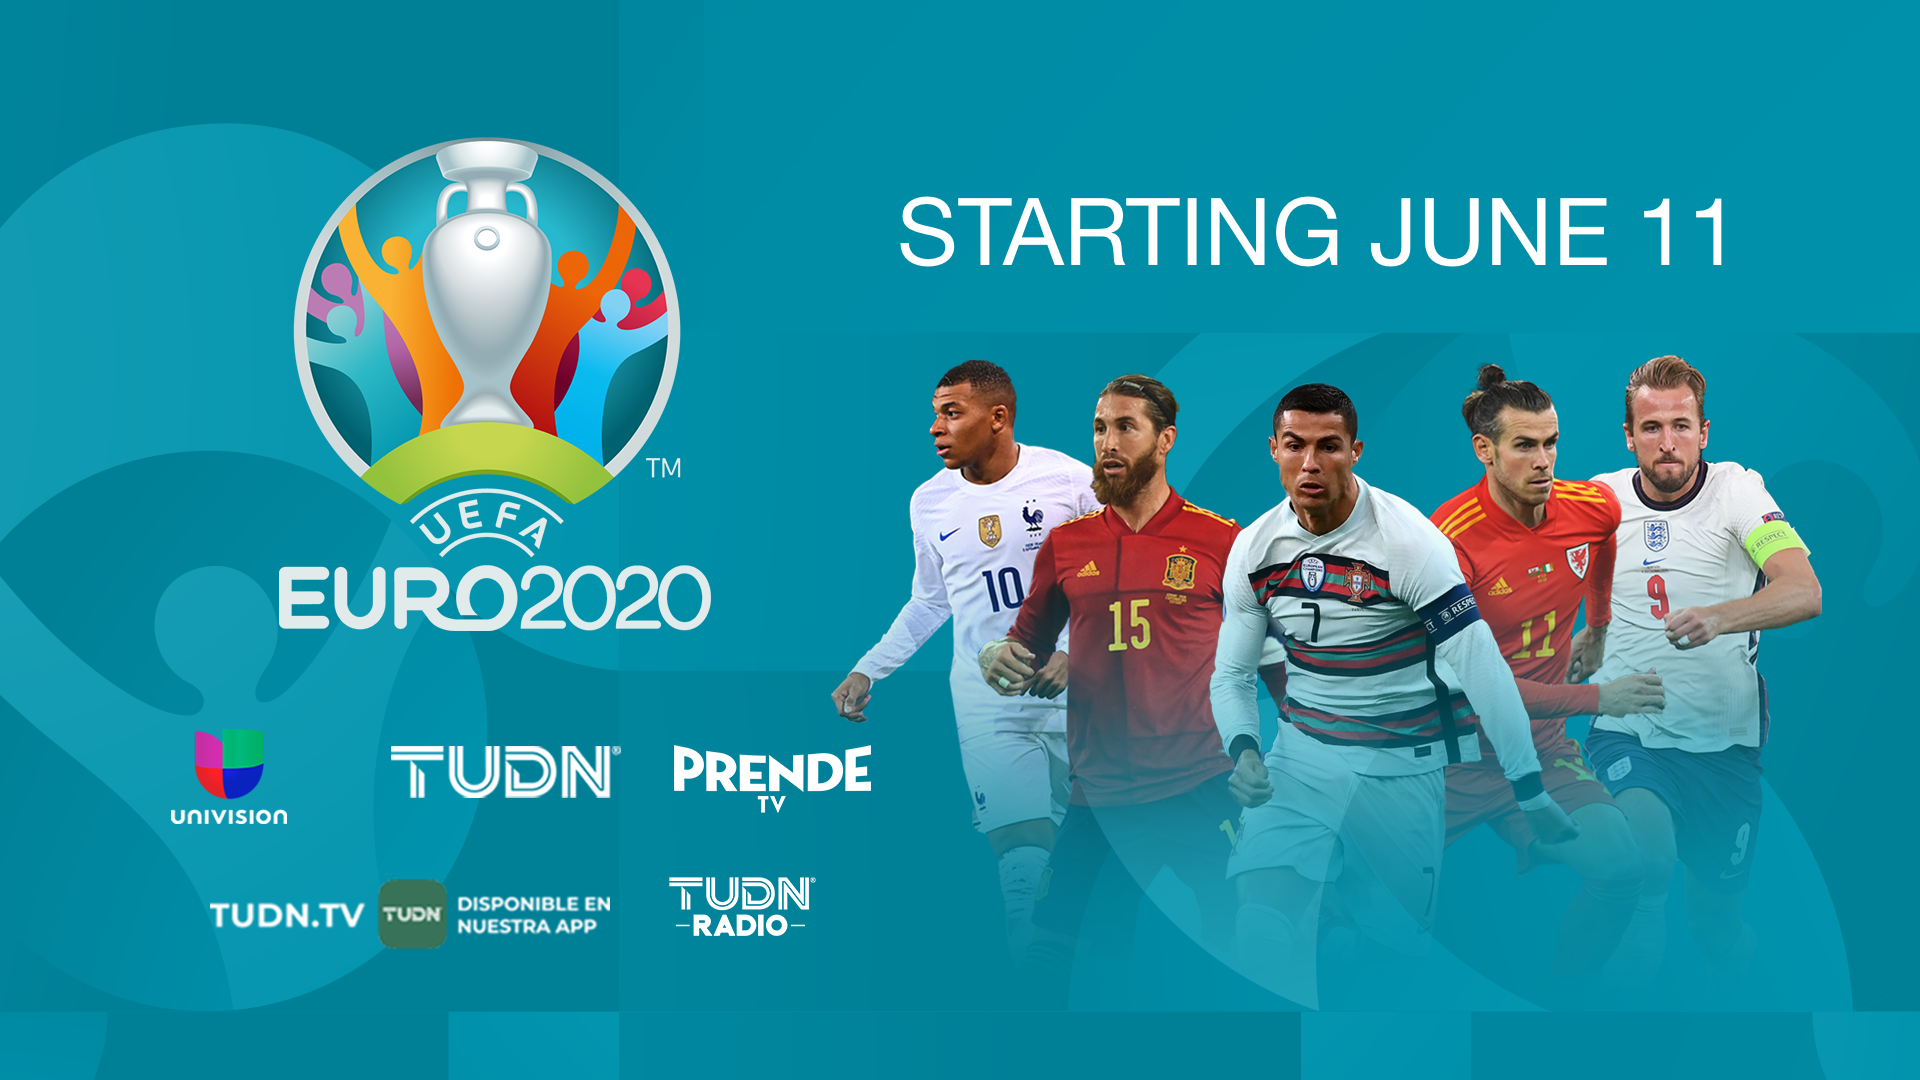 Univision’s PrendeTV To Stream Live Euro 2020 Soccer Matches Next TV